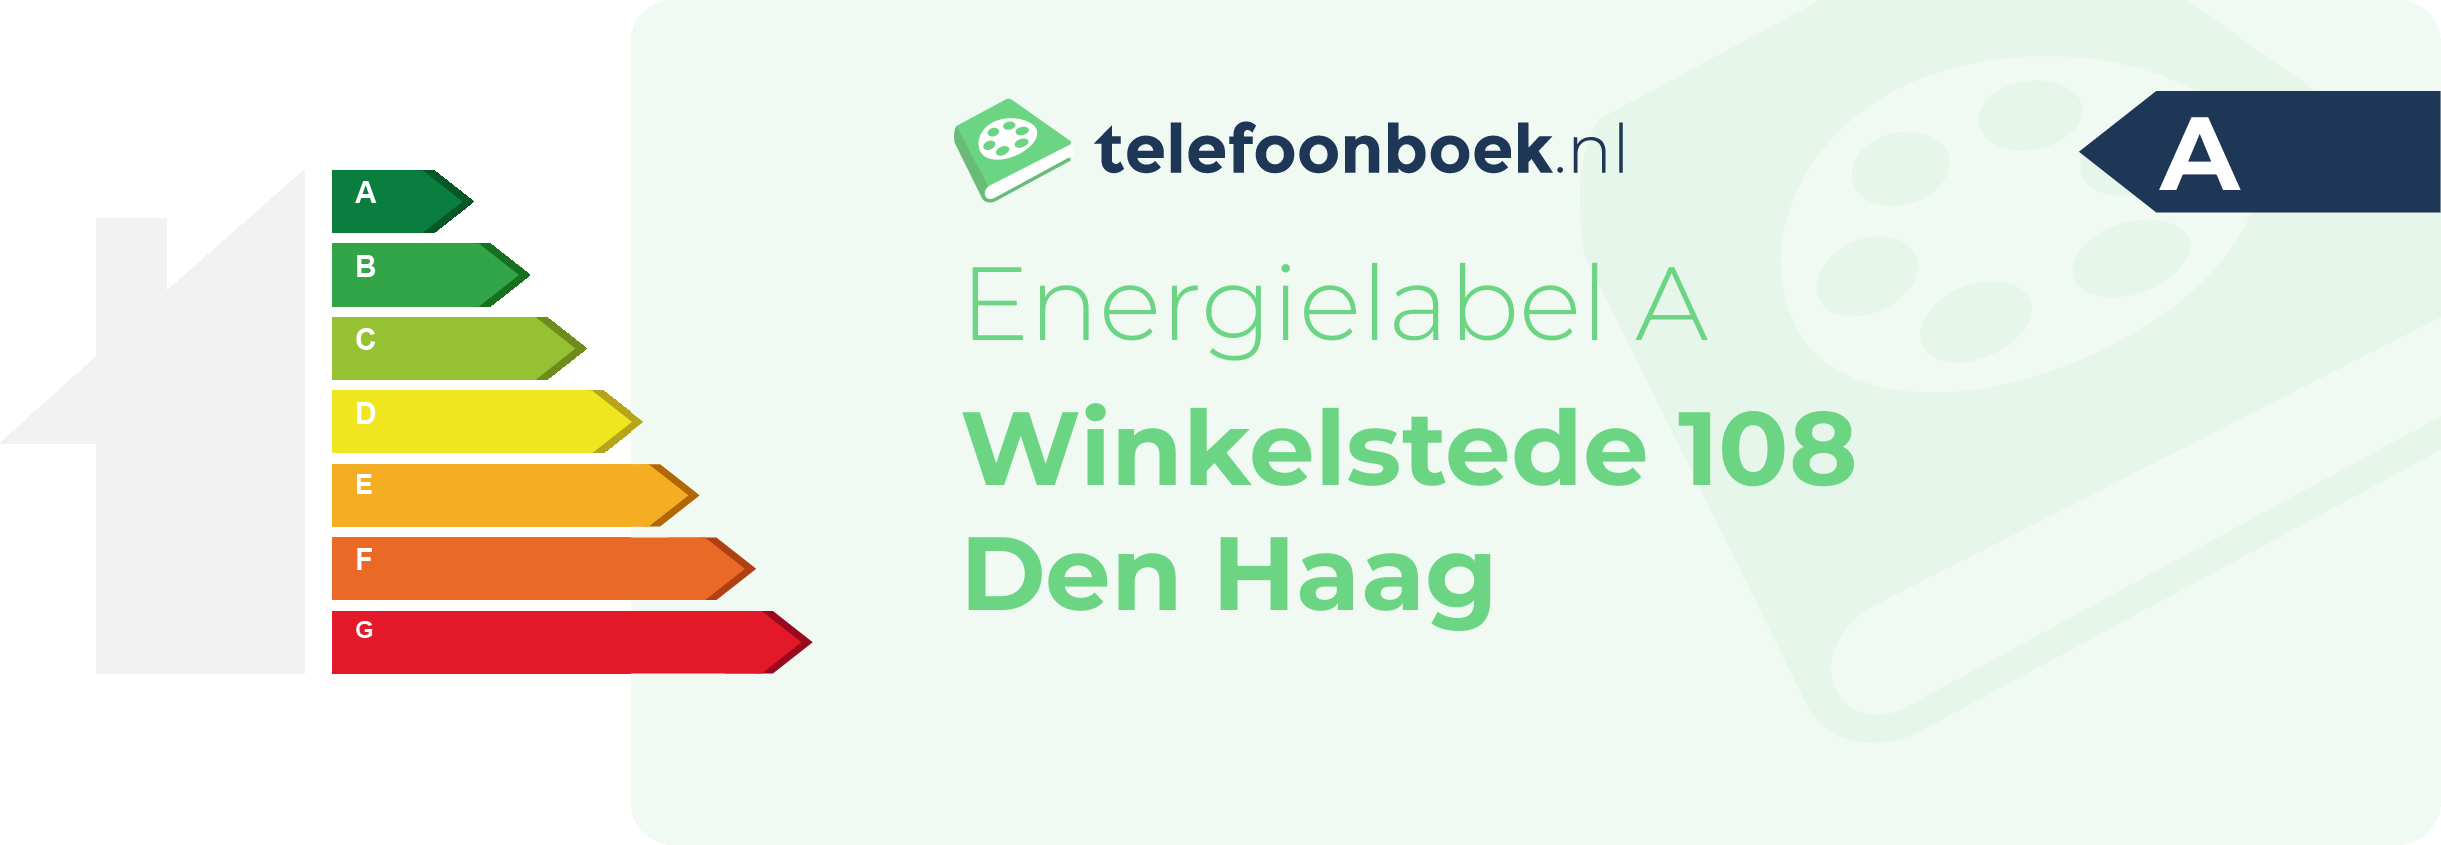 Energielabel Winkelstede 108 Den Haag